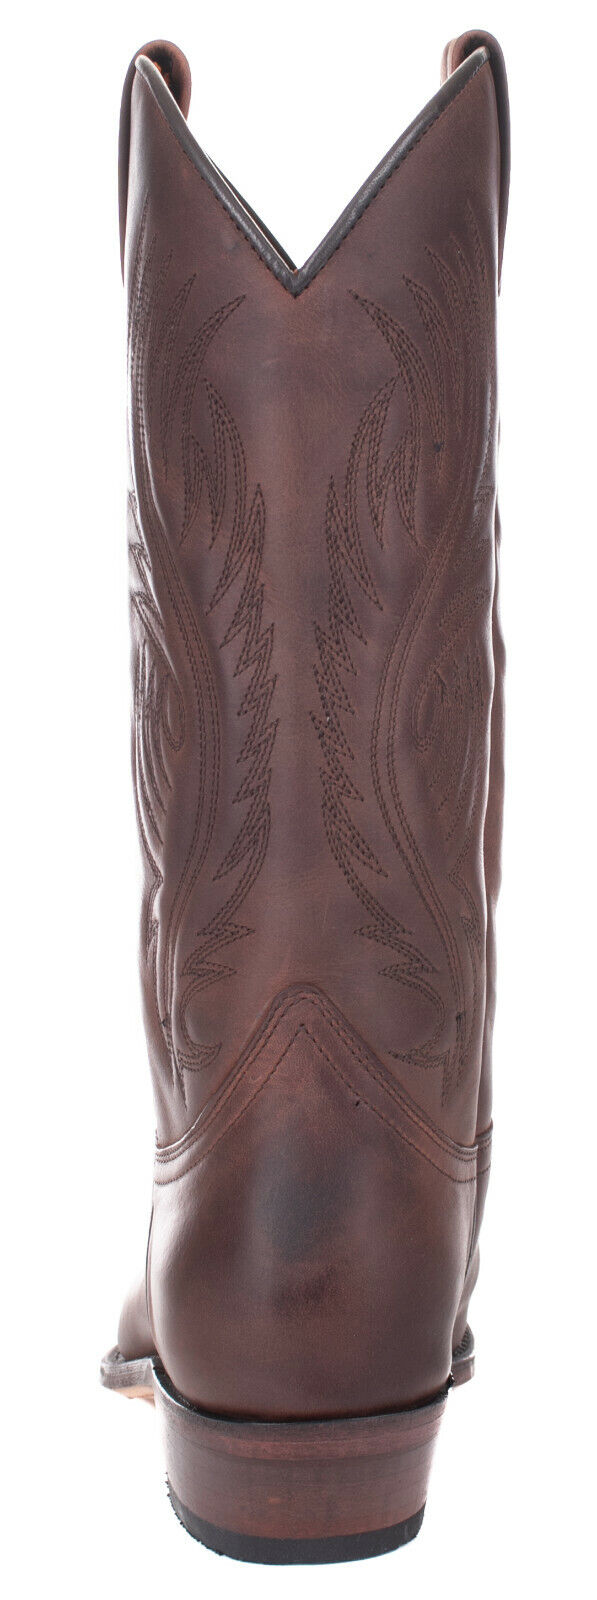 Sendra Boots Cowboy Stiefel 2605 Sprinter 7004 Western Leder Unisex Braun